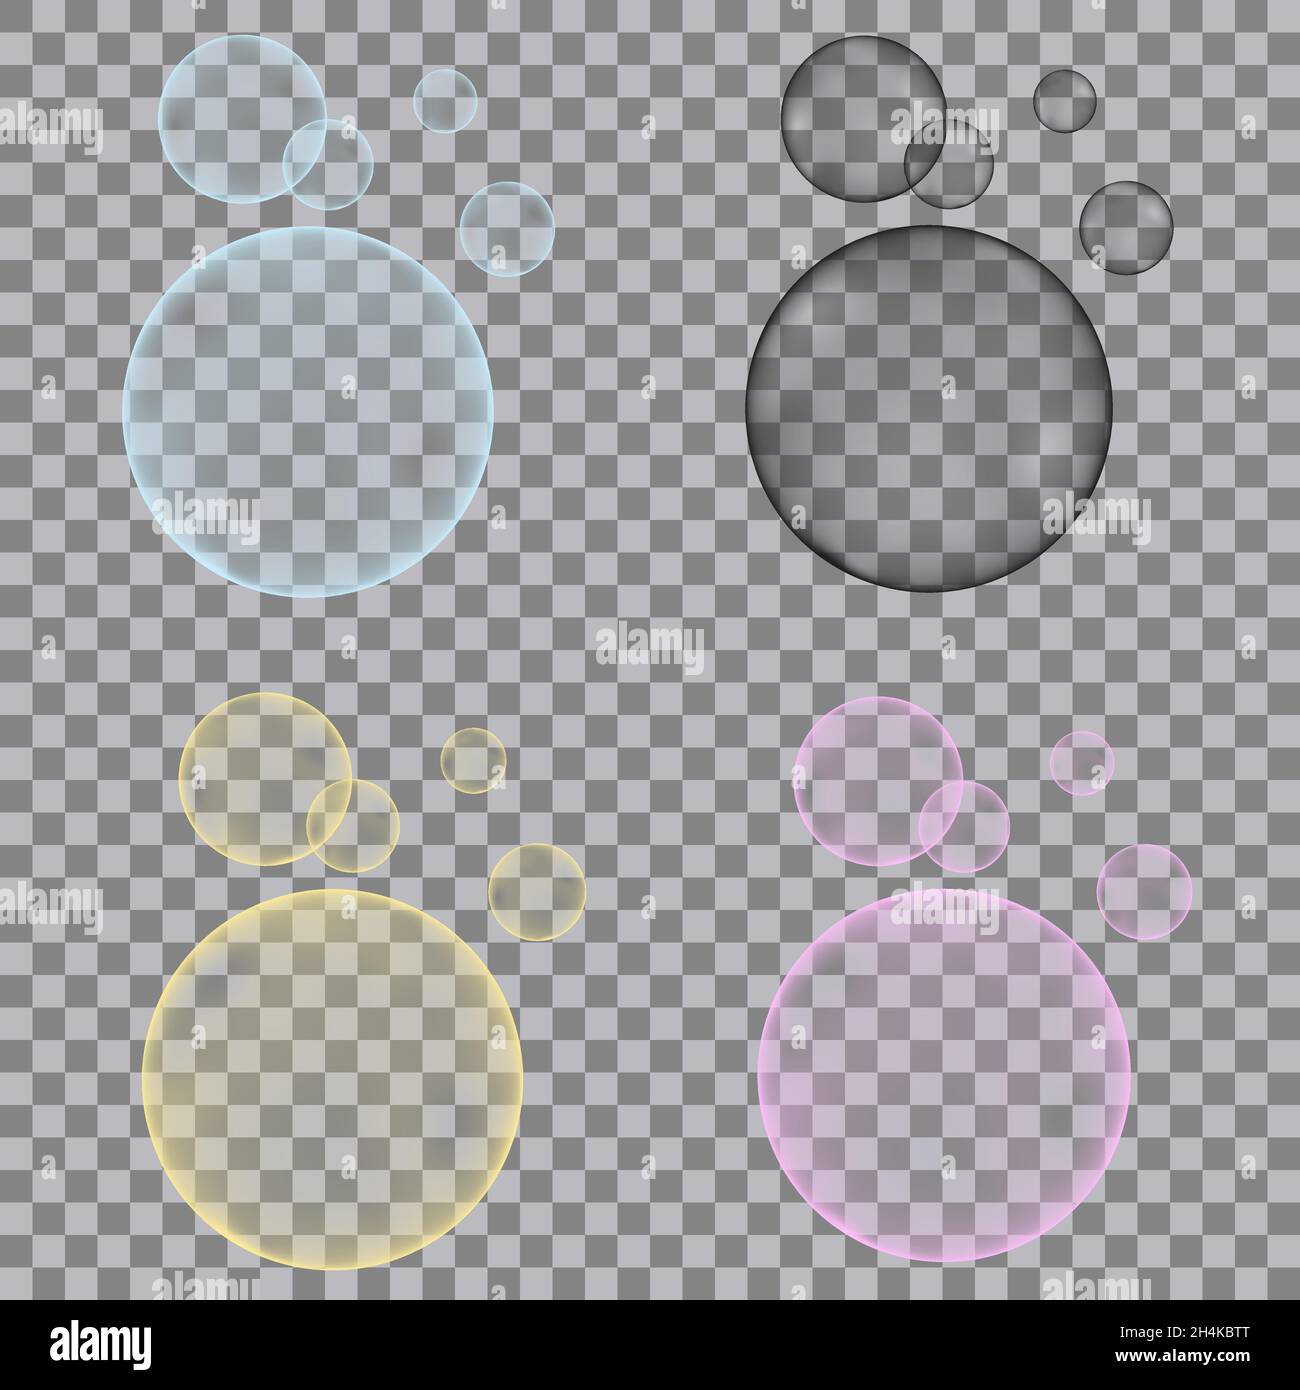 Bulles d'oxygène pétillantes dans l'eau de fenitisation.Bleu vif, jaune, rose, noir scintillant sur fond transparent.Texture vectorielle pour aquarium, soda drin Illustration de Vecteur